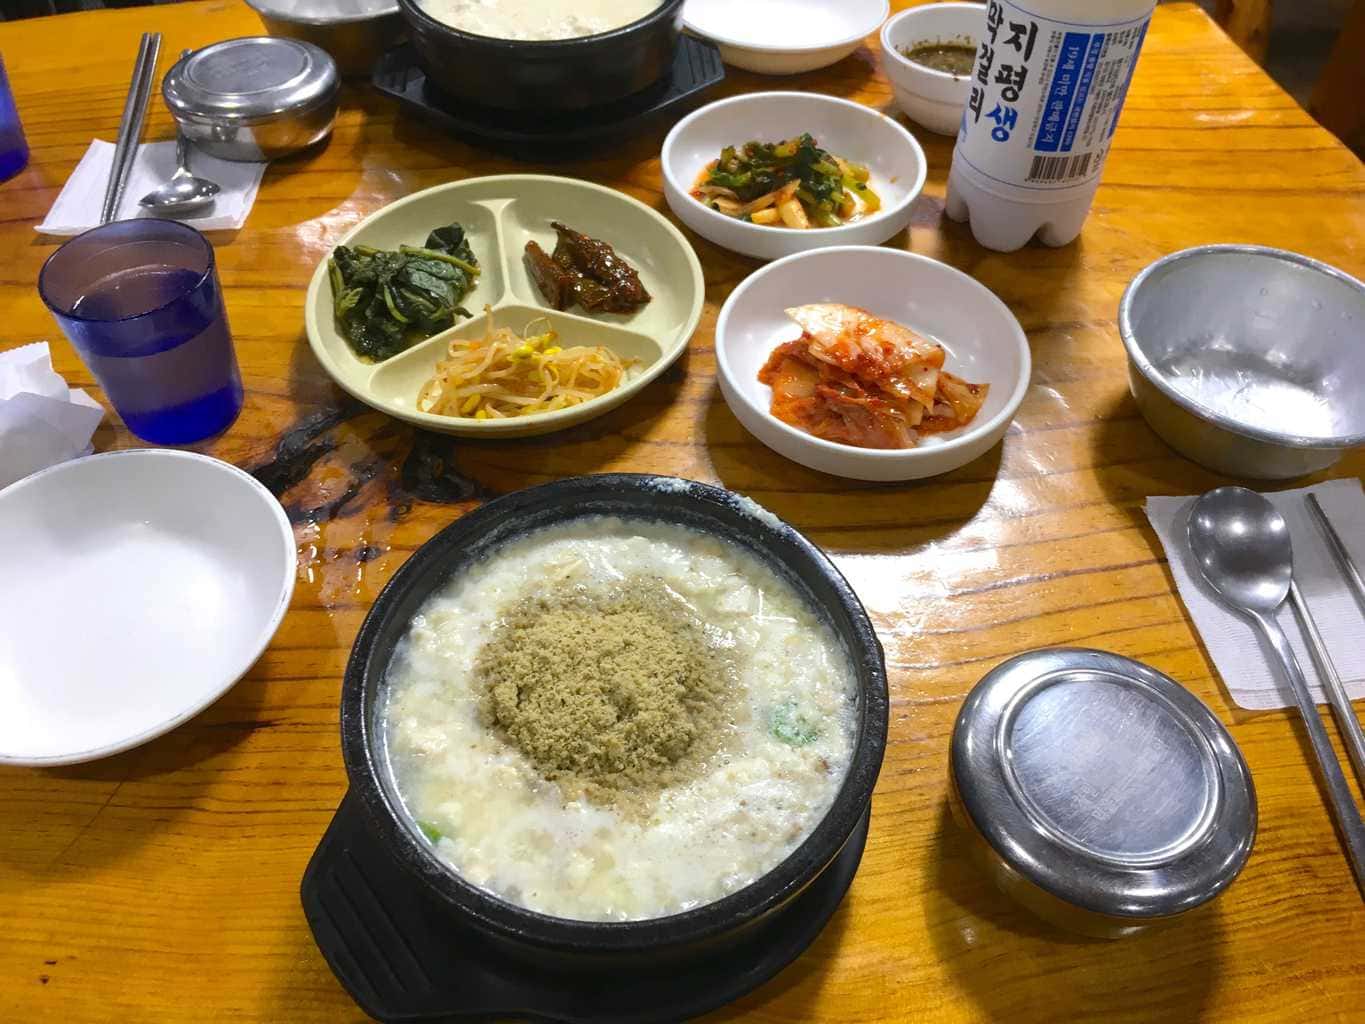 Traditional Korean food Perilla seed kalguksu